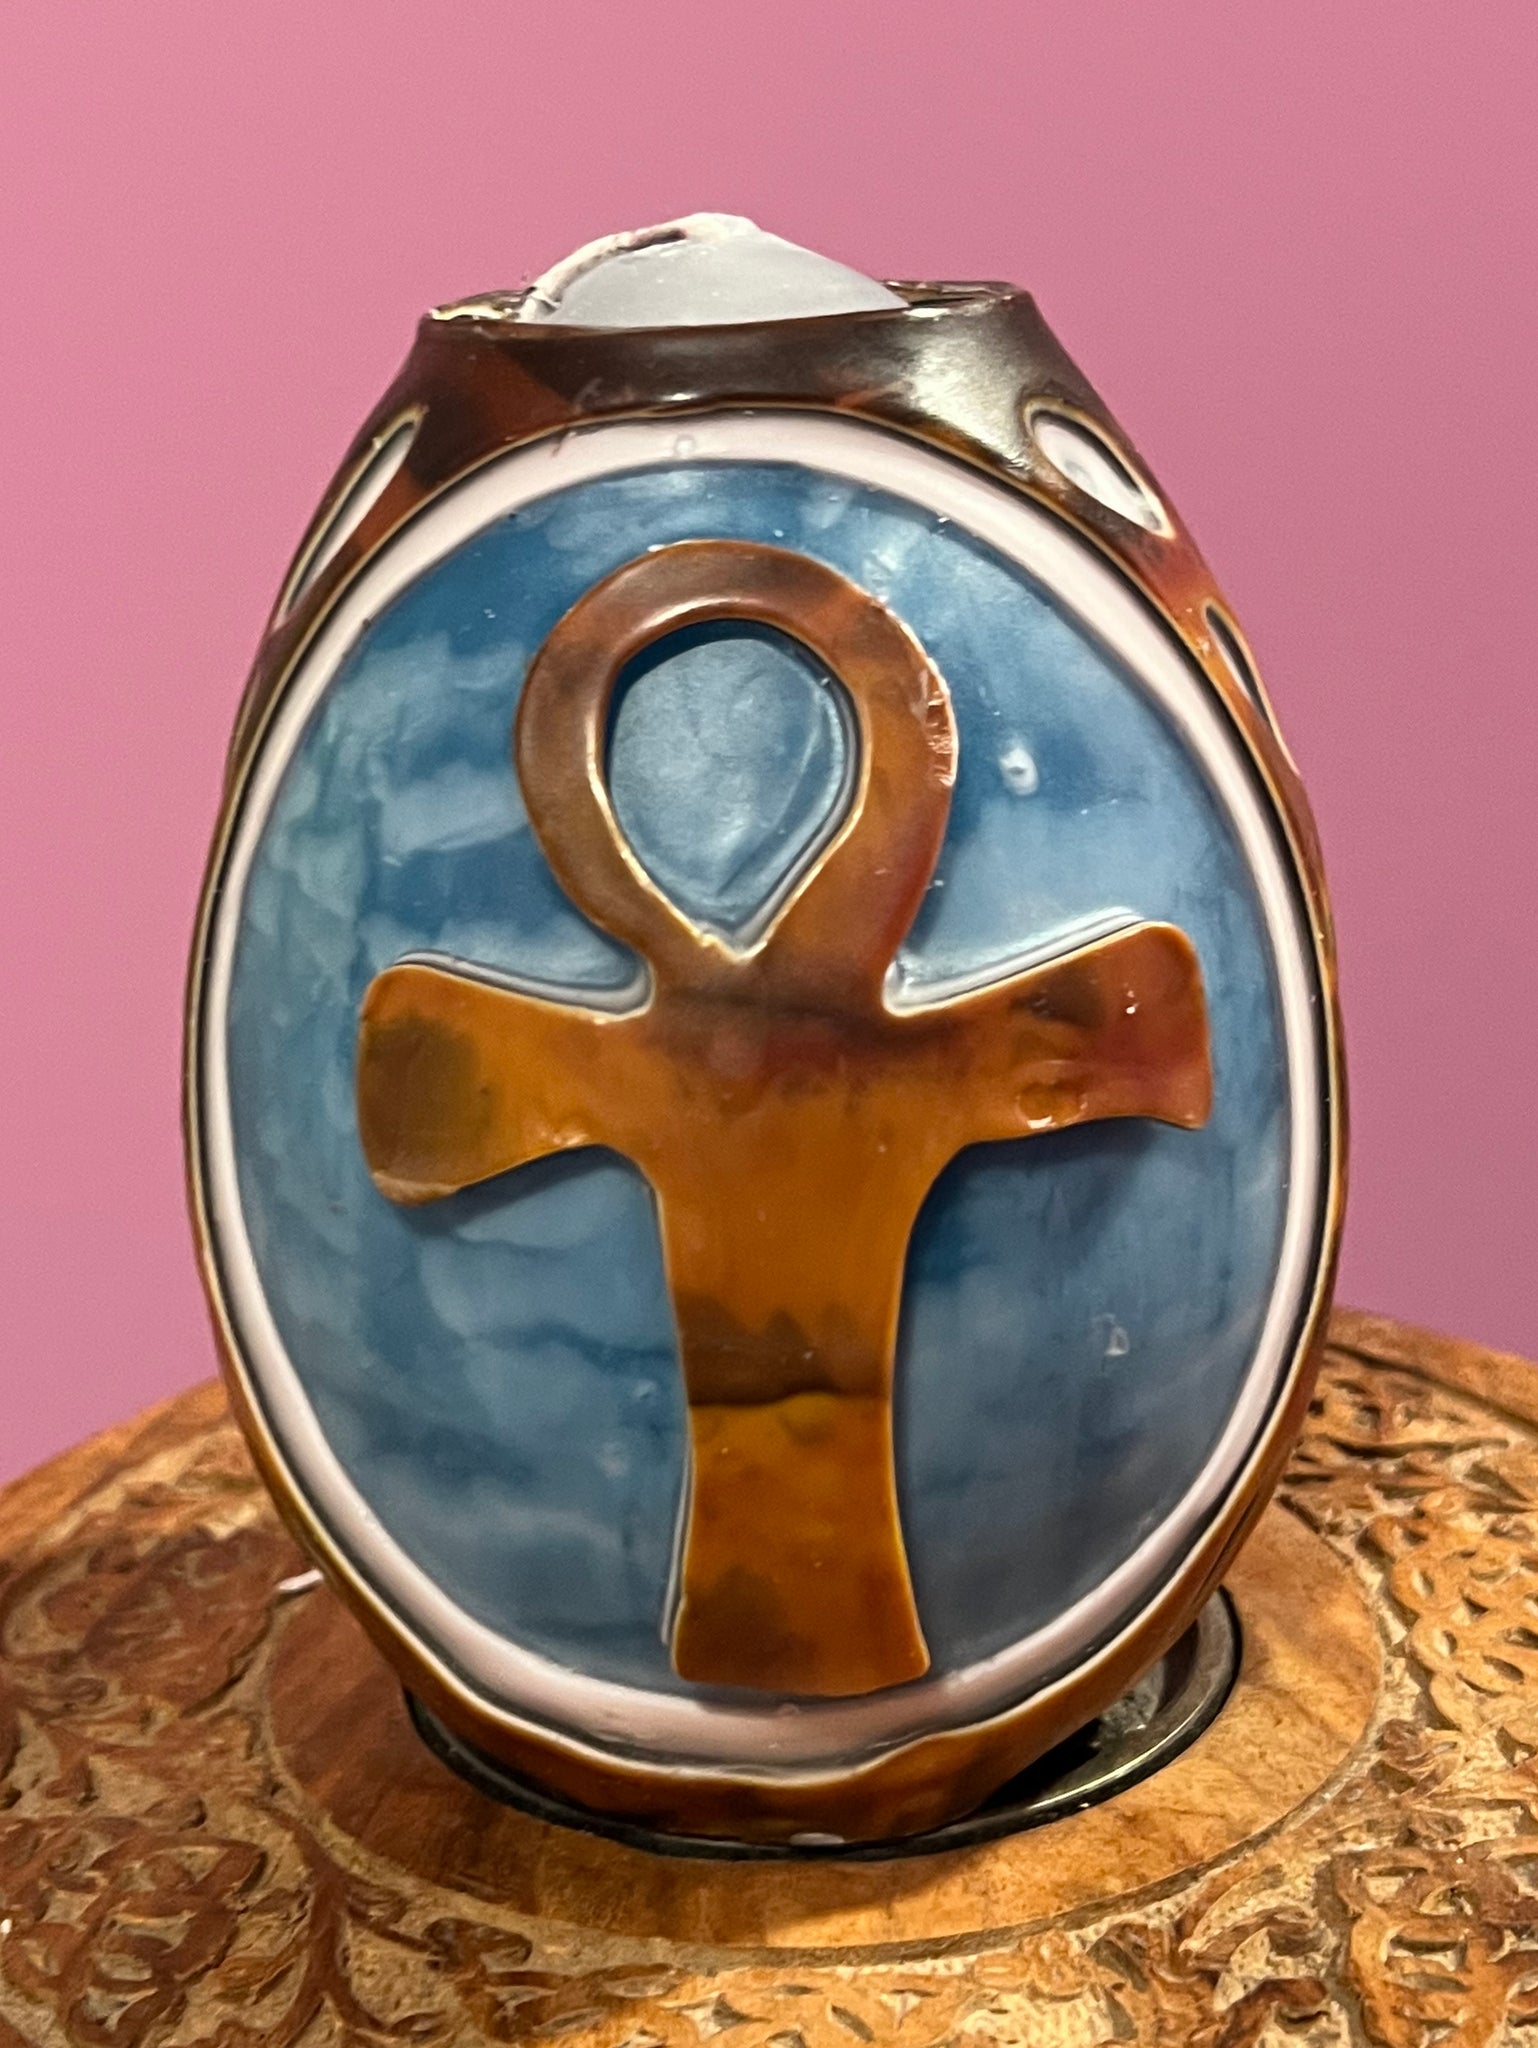 Ankh Symbol Egg shaped Candle